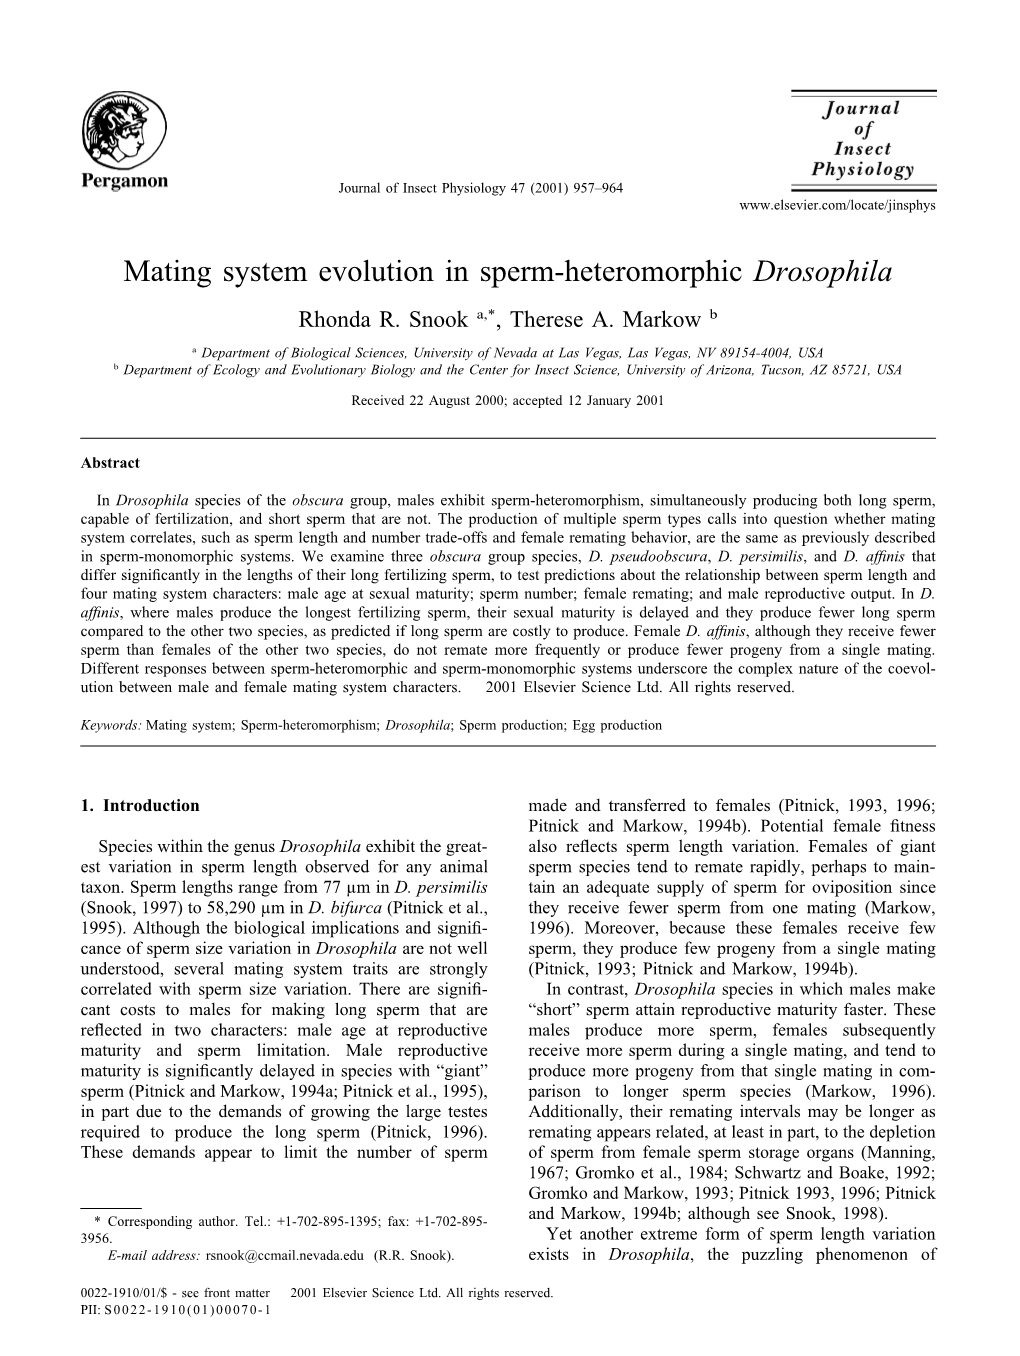 Mating System Evolution in Sperm-Heteromorphic Drosophila Rhonda R